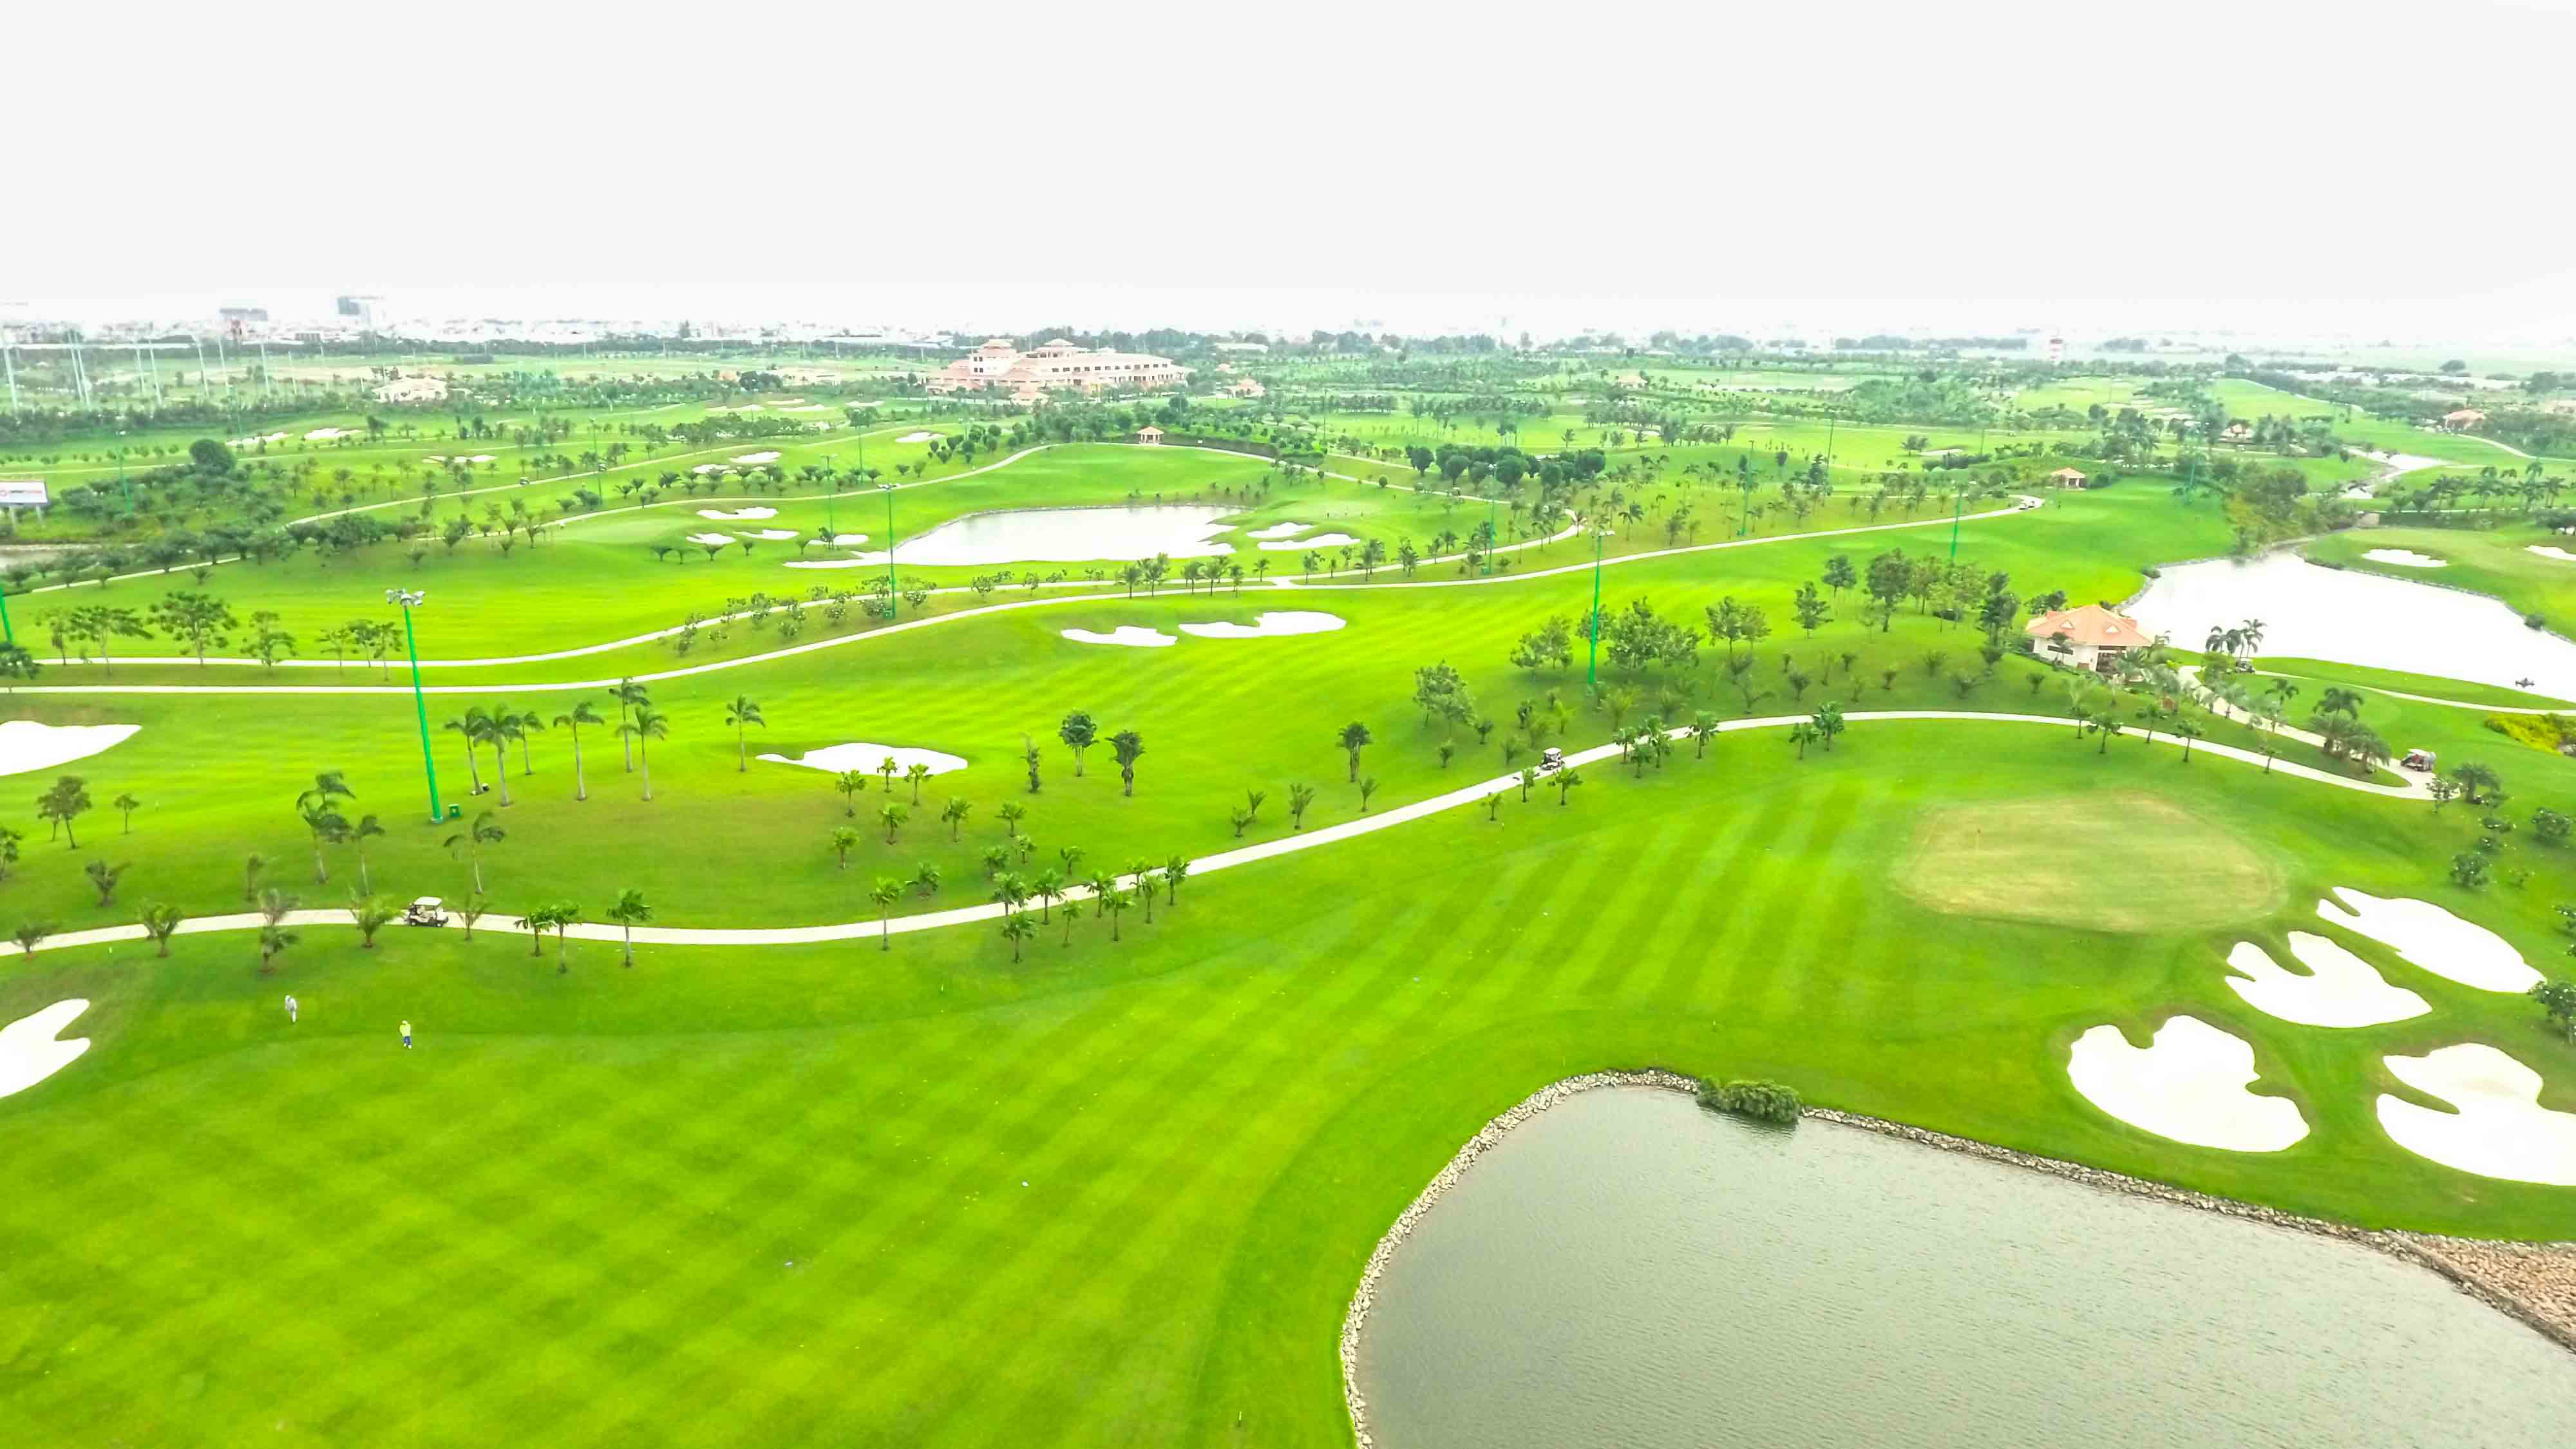 Sân golf Tân Sơn Nhất: Sân golf trung tâm duy nhất ở TP.HCM